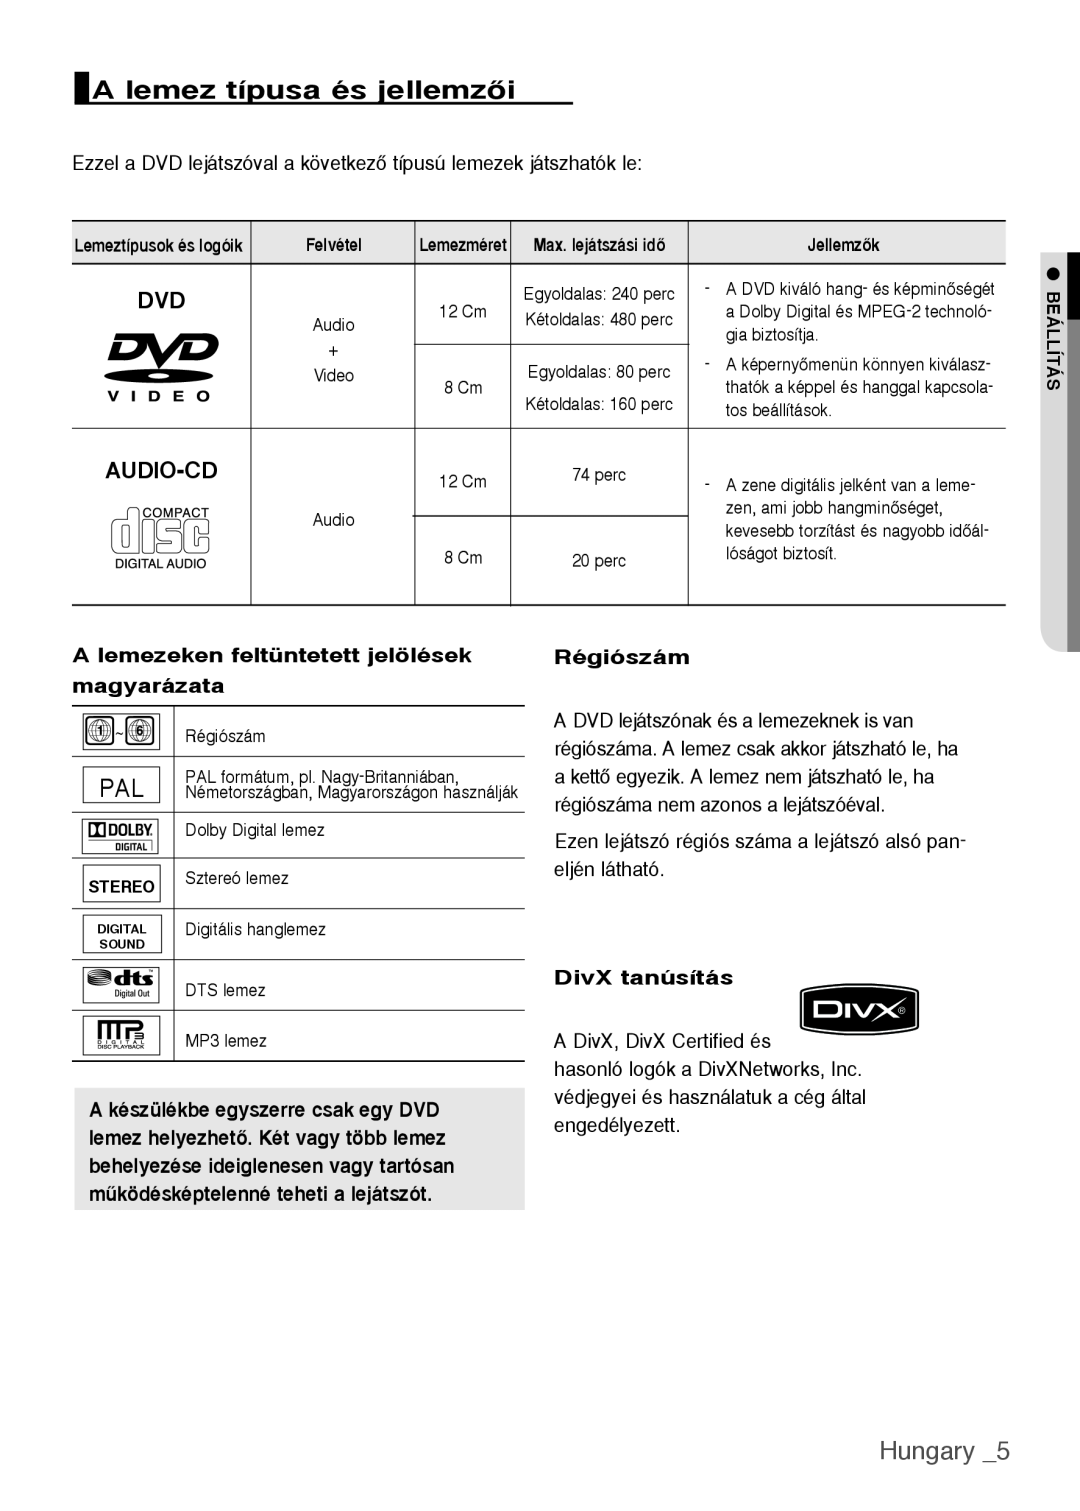 Samsung DVD-H1080W/EDC A lemez típusa és jellemzŒi, Hungary , A lemezeken feltüntetett jelölések magyarázata, Régiószám 